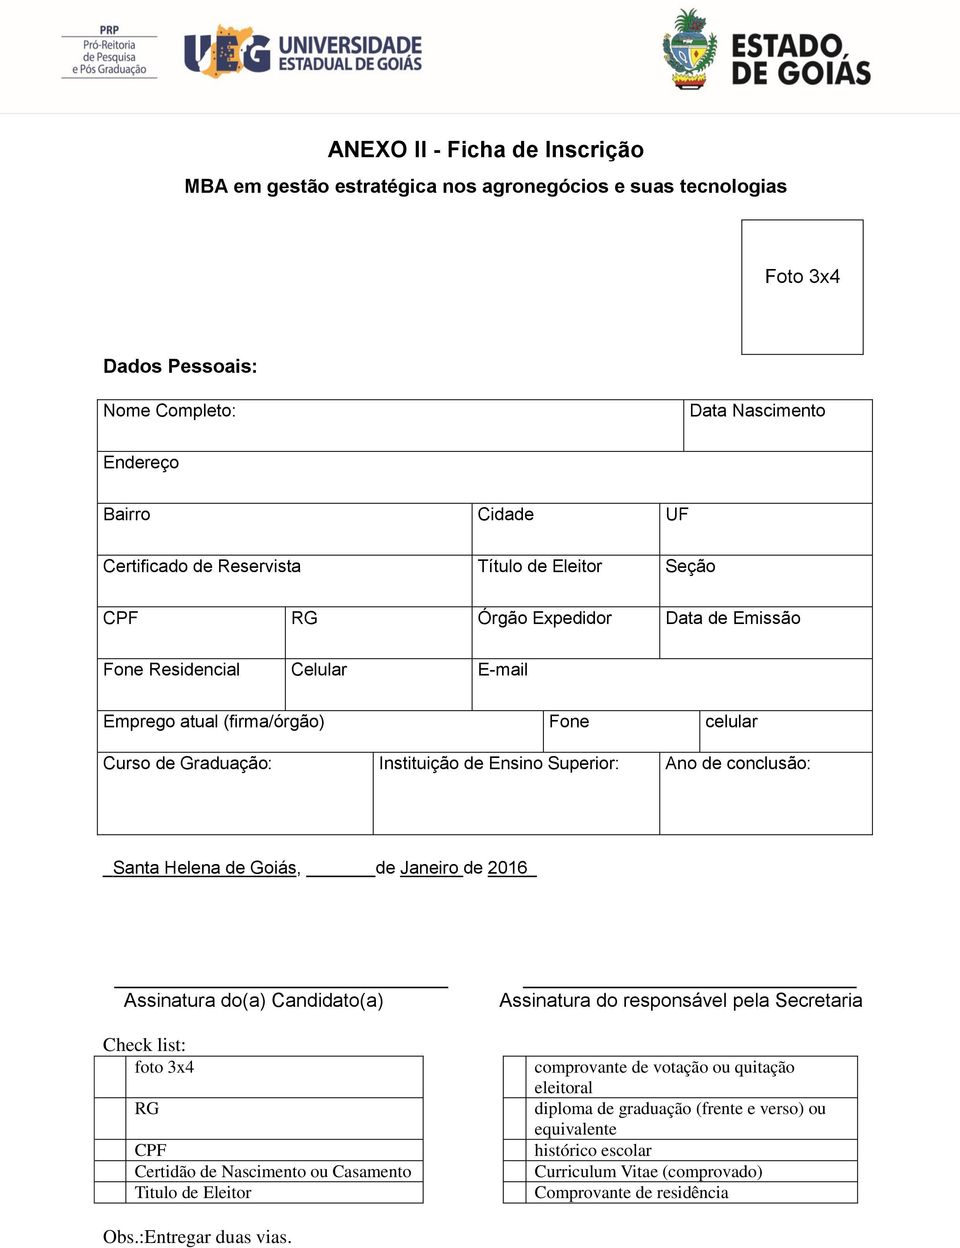 conclusão: _Santa Helena de Goiás, de Janeiro de 2016 Assinatura do(a) Candidato(a) Check list: foto 3x4 RG CPF Certidão de Nascimento ou Casamento Titulo de Eleitor Assinatura do responsável pela